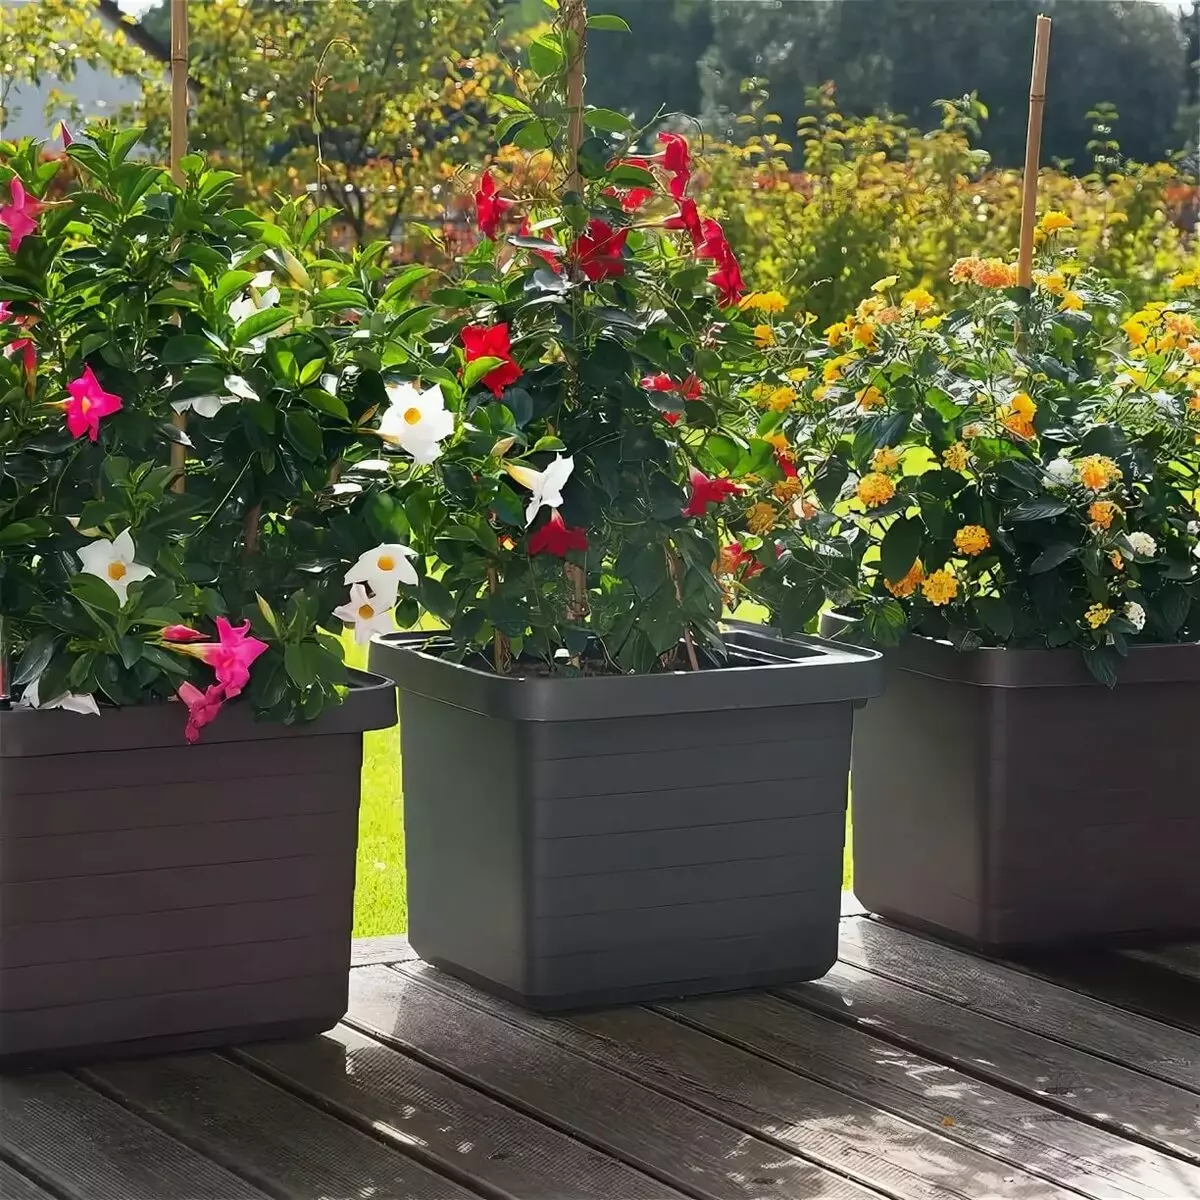 Varanda caixas de flores: caixas de plástico com fixação e suspensão caixas de rattan, caixas florais e outros modelos na varanda 10004_25